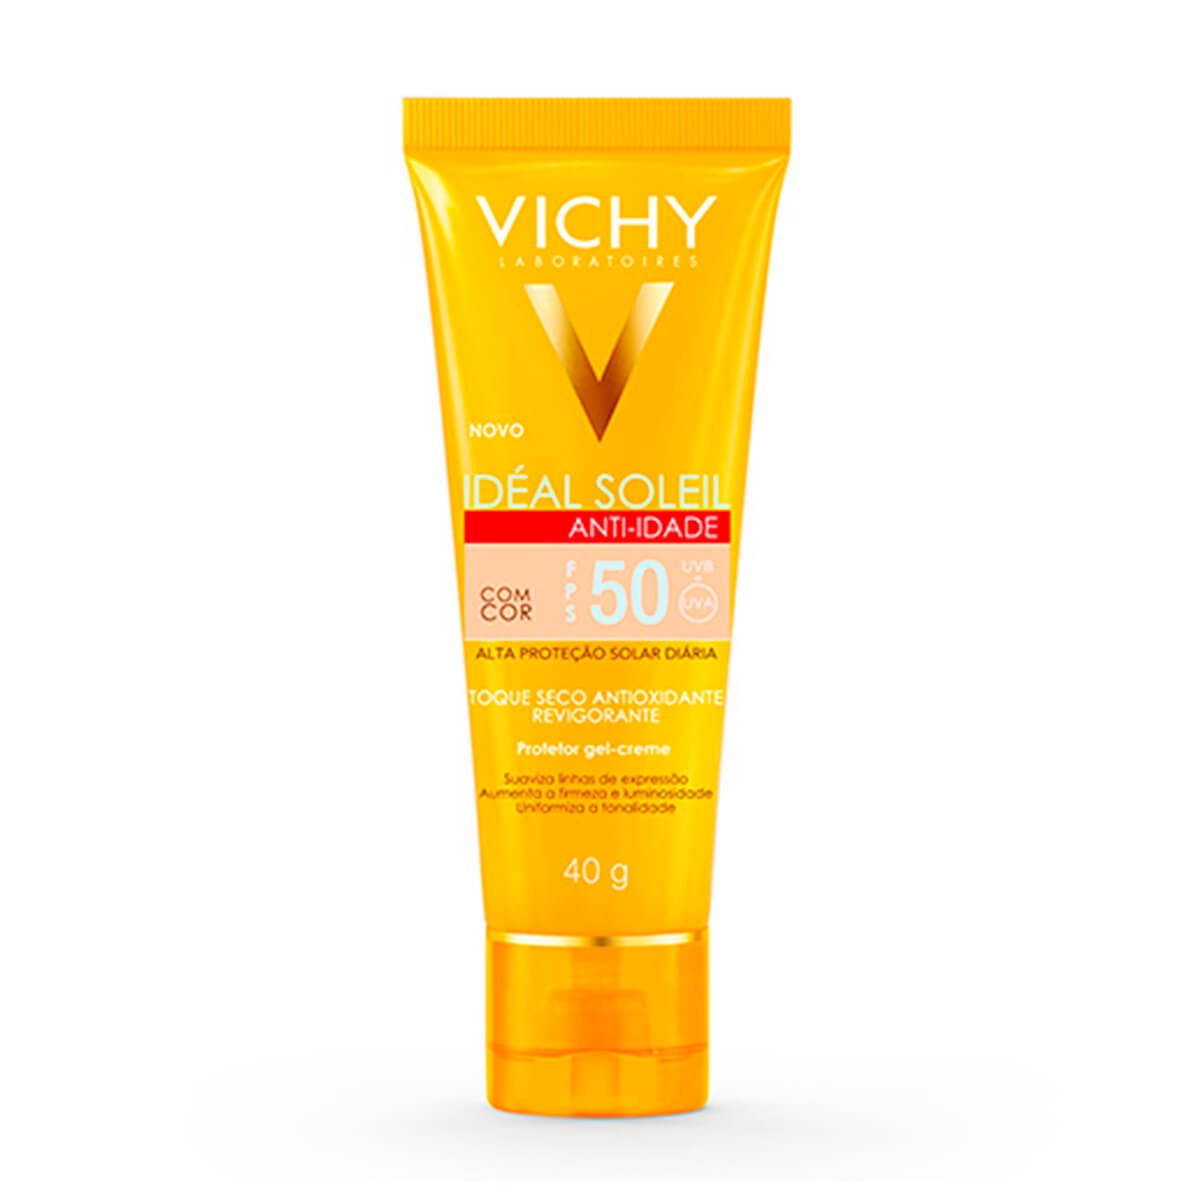 Protetor Solar Facial Vichy Idéal Soleil Anti-idade Toque Seco com Cor FPS50 40g